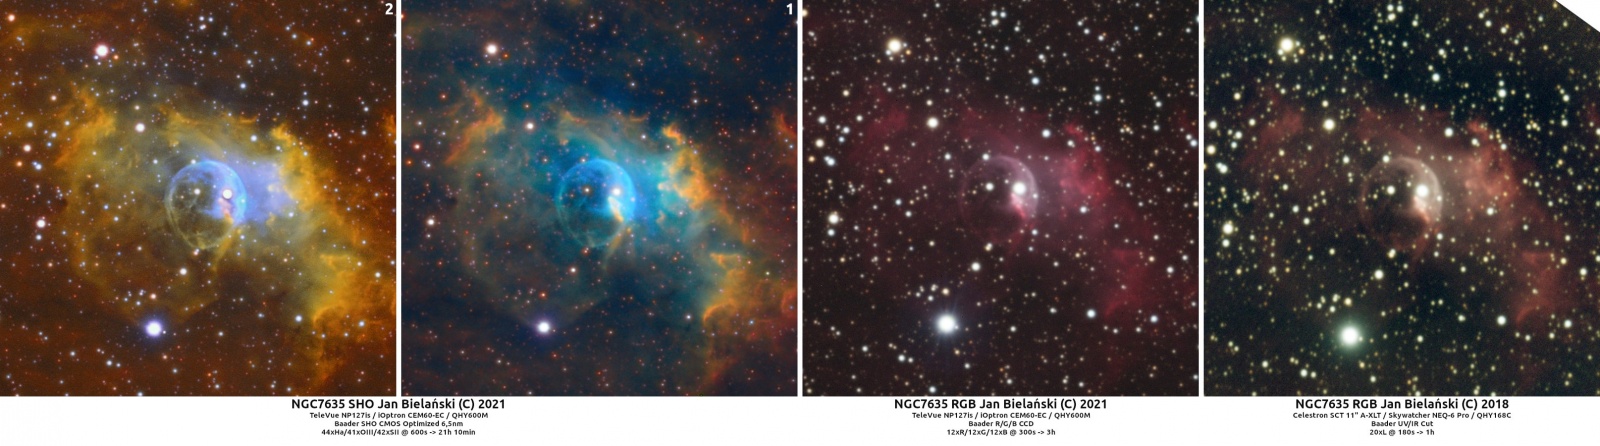 NGC7635_2021vs2018.thumb.jpg.de20cd56242cfdb1e60a7020abc31dd4.jpg